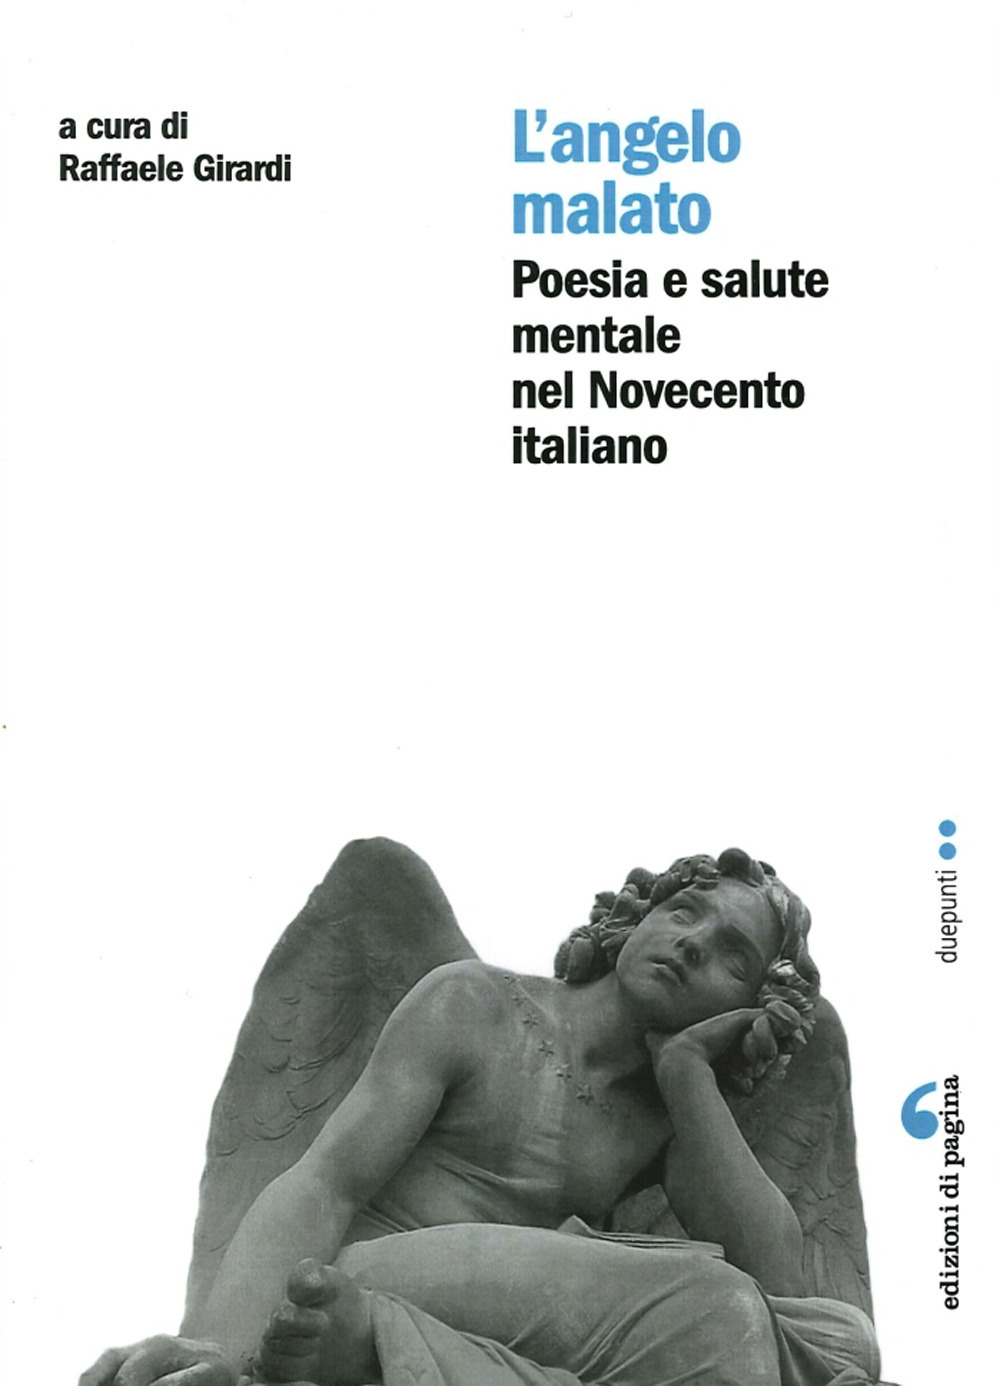 L'angelo malato. Poesia e salute mentale nel Novecento italiano